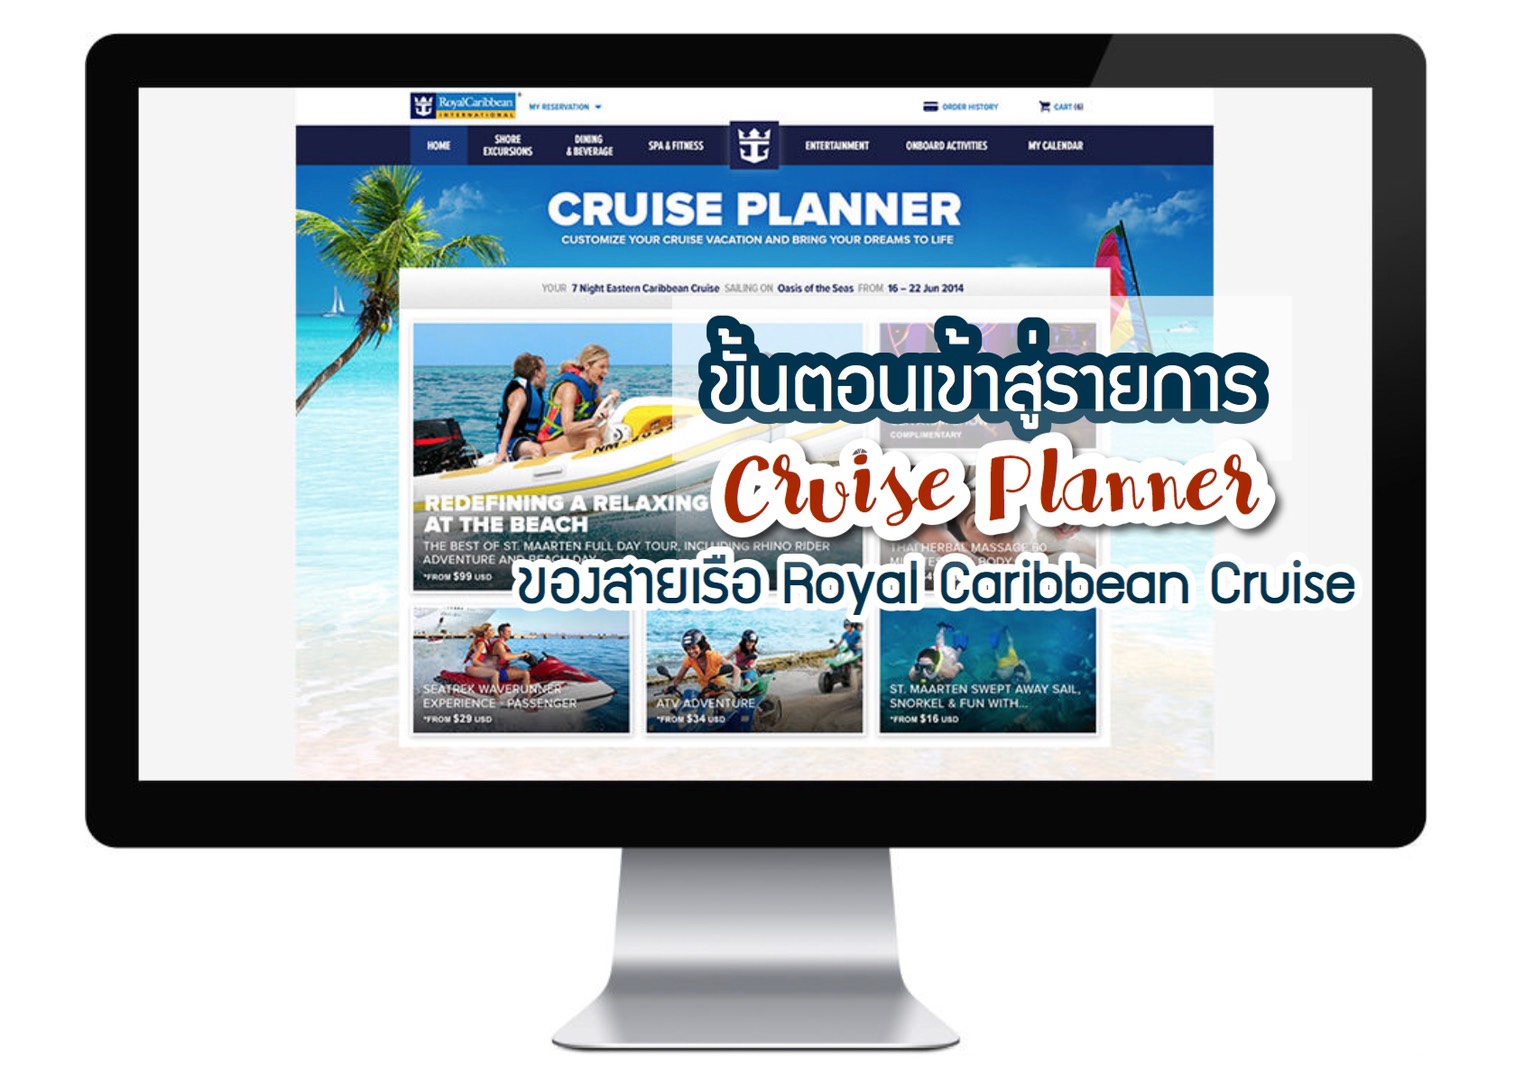 ขั้นตอนเข้าสู่รายการ Cruise Planner ของสายเรือ Royal Caribbean Cruise